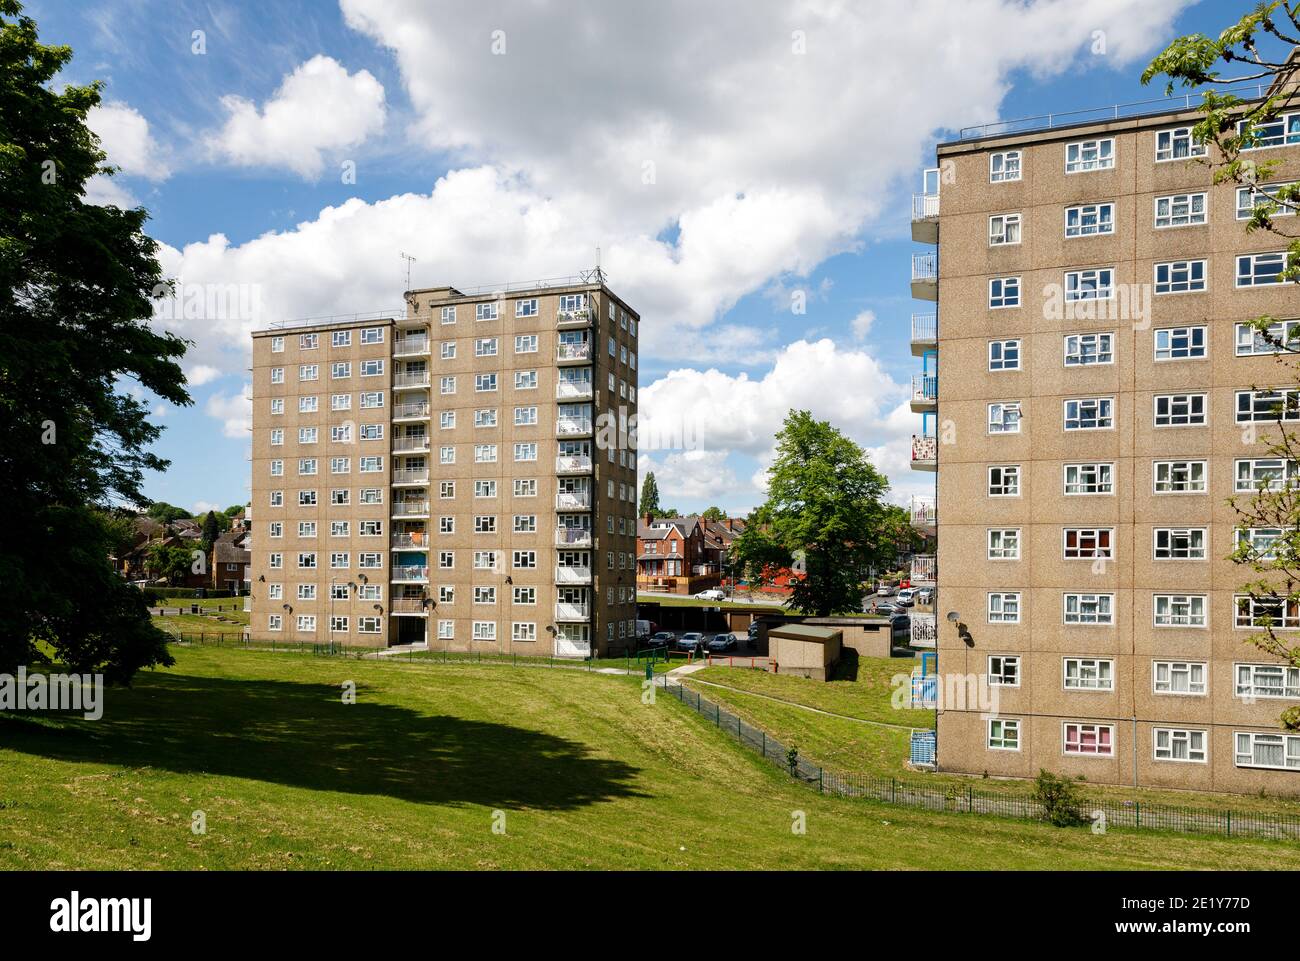 Des blocs d'appartements sur une journée ensoleillée au Royaume-Uni. Raynville court et Raynville Grange, Bramley Leeds, Angleterre Banque D'Images